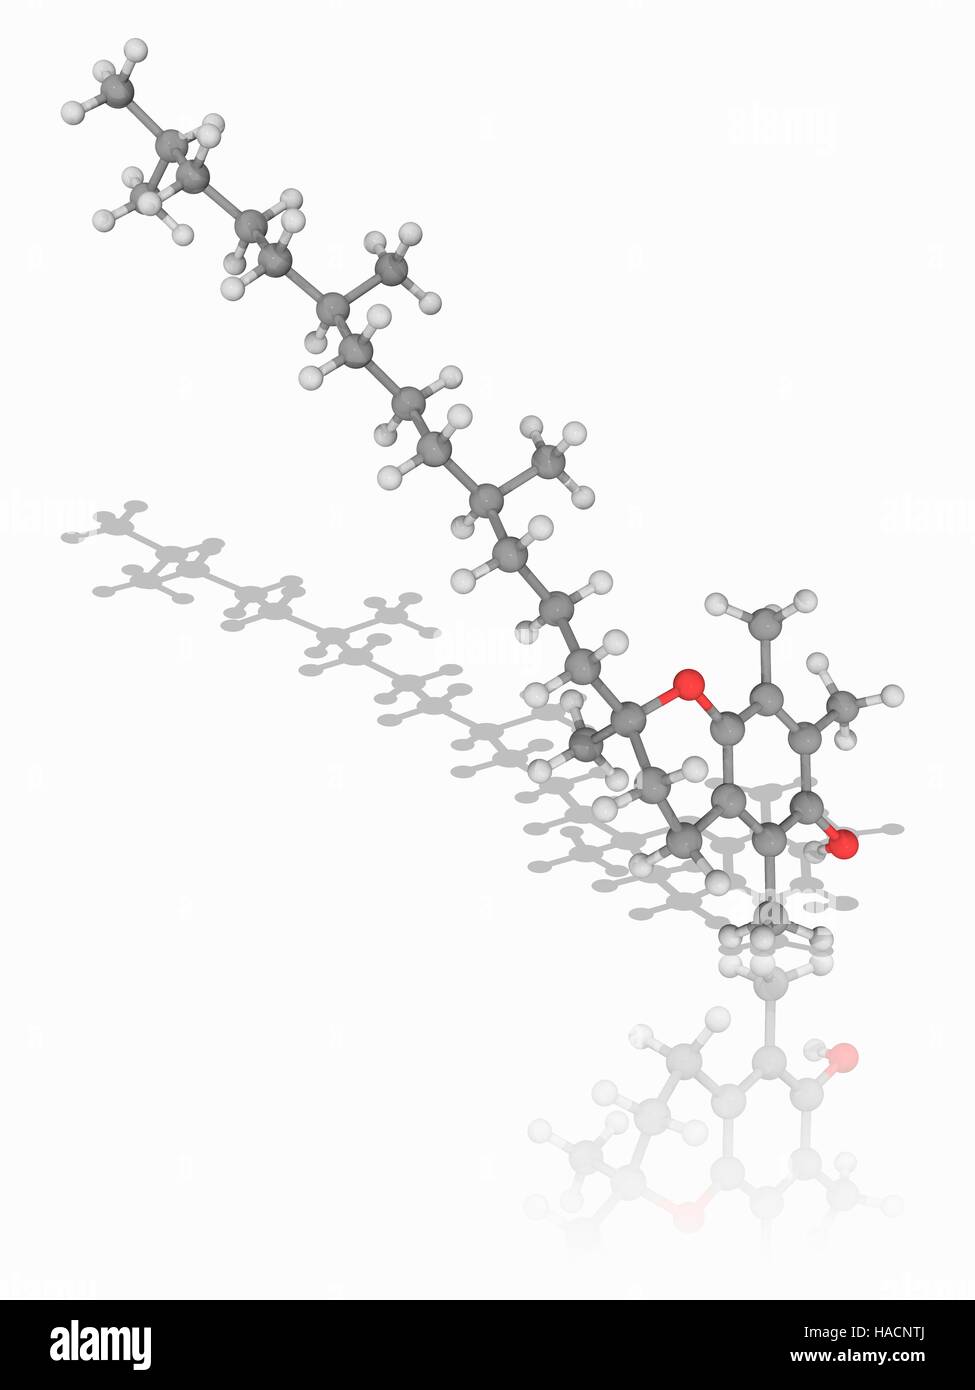 Vitamin E. Molecular Modell von Alpha-Tocopherol (C29. H50. O2), führt die biologisch aktive Form von Vitamin e-Mangel an diesem Vitamin zu neuromuskulären Problemen. Atome als Kugeln dargestellt werden und sind farblich gekennzeichnet: Kohlenstoff (grau), Wasserstoff (weiß) und Sauerstoff (rot). Abbildung. Stockfoto